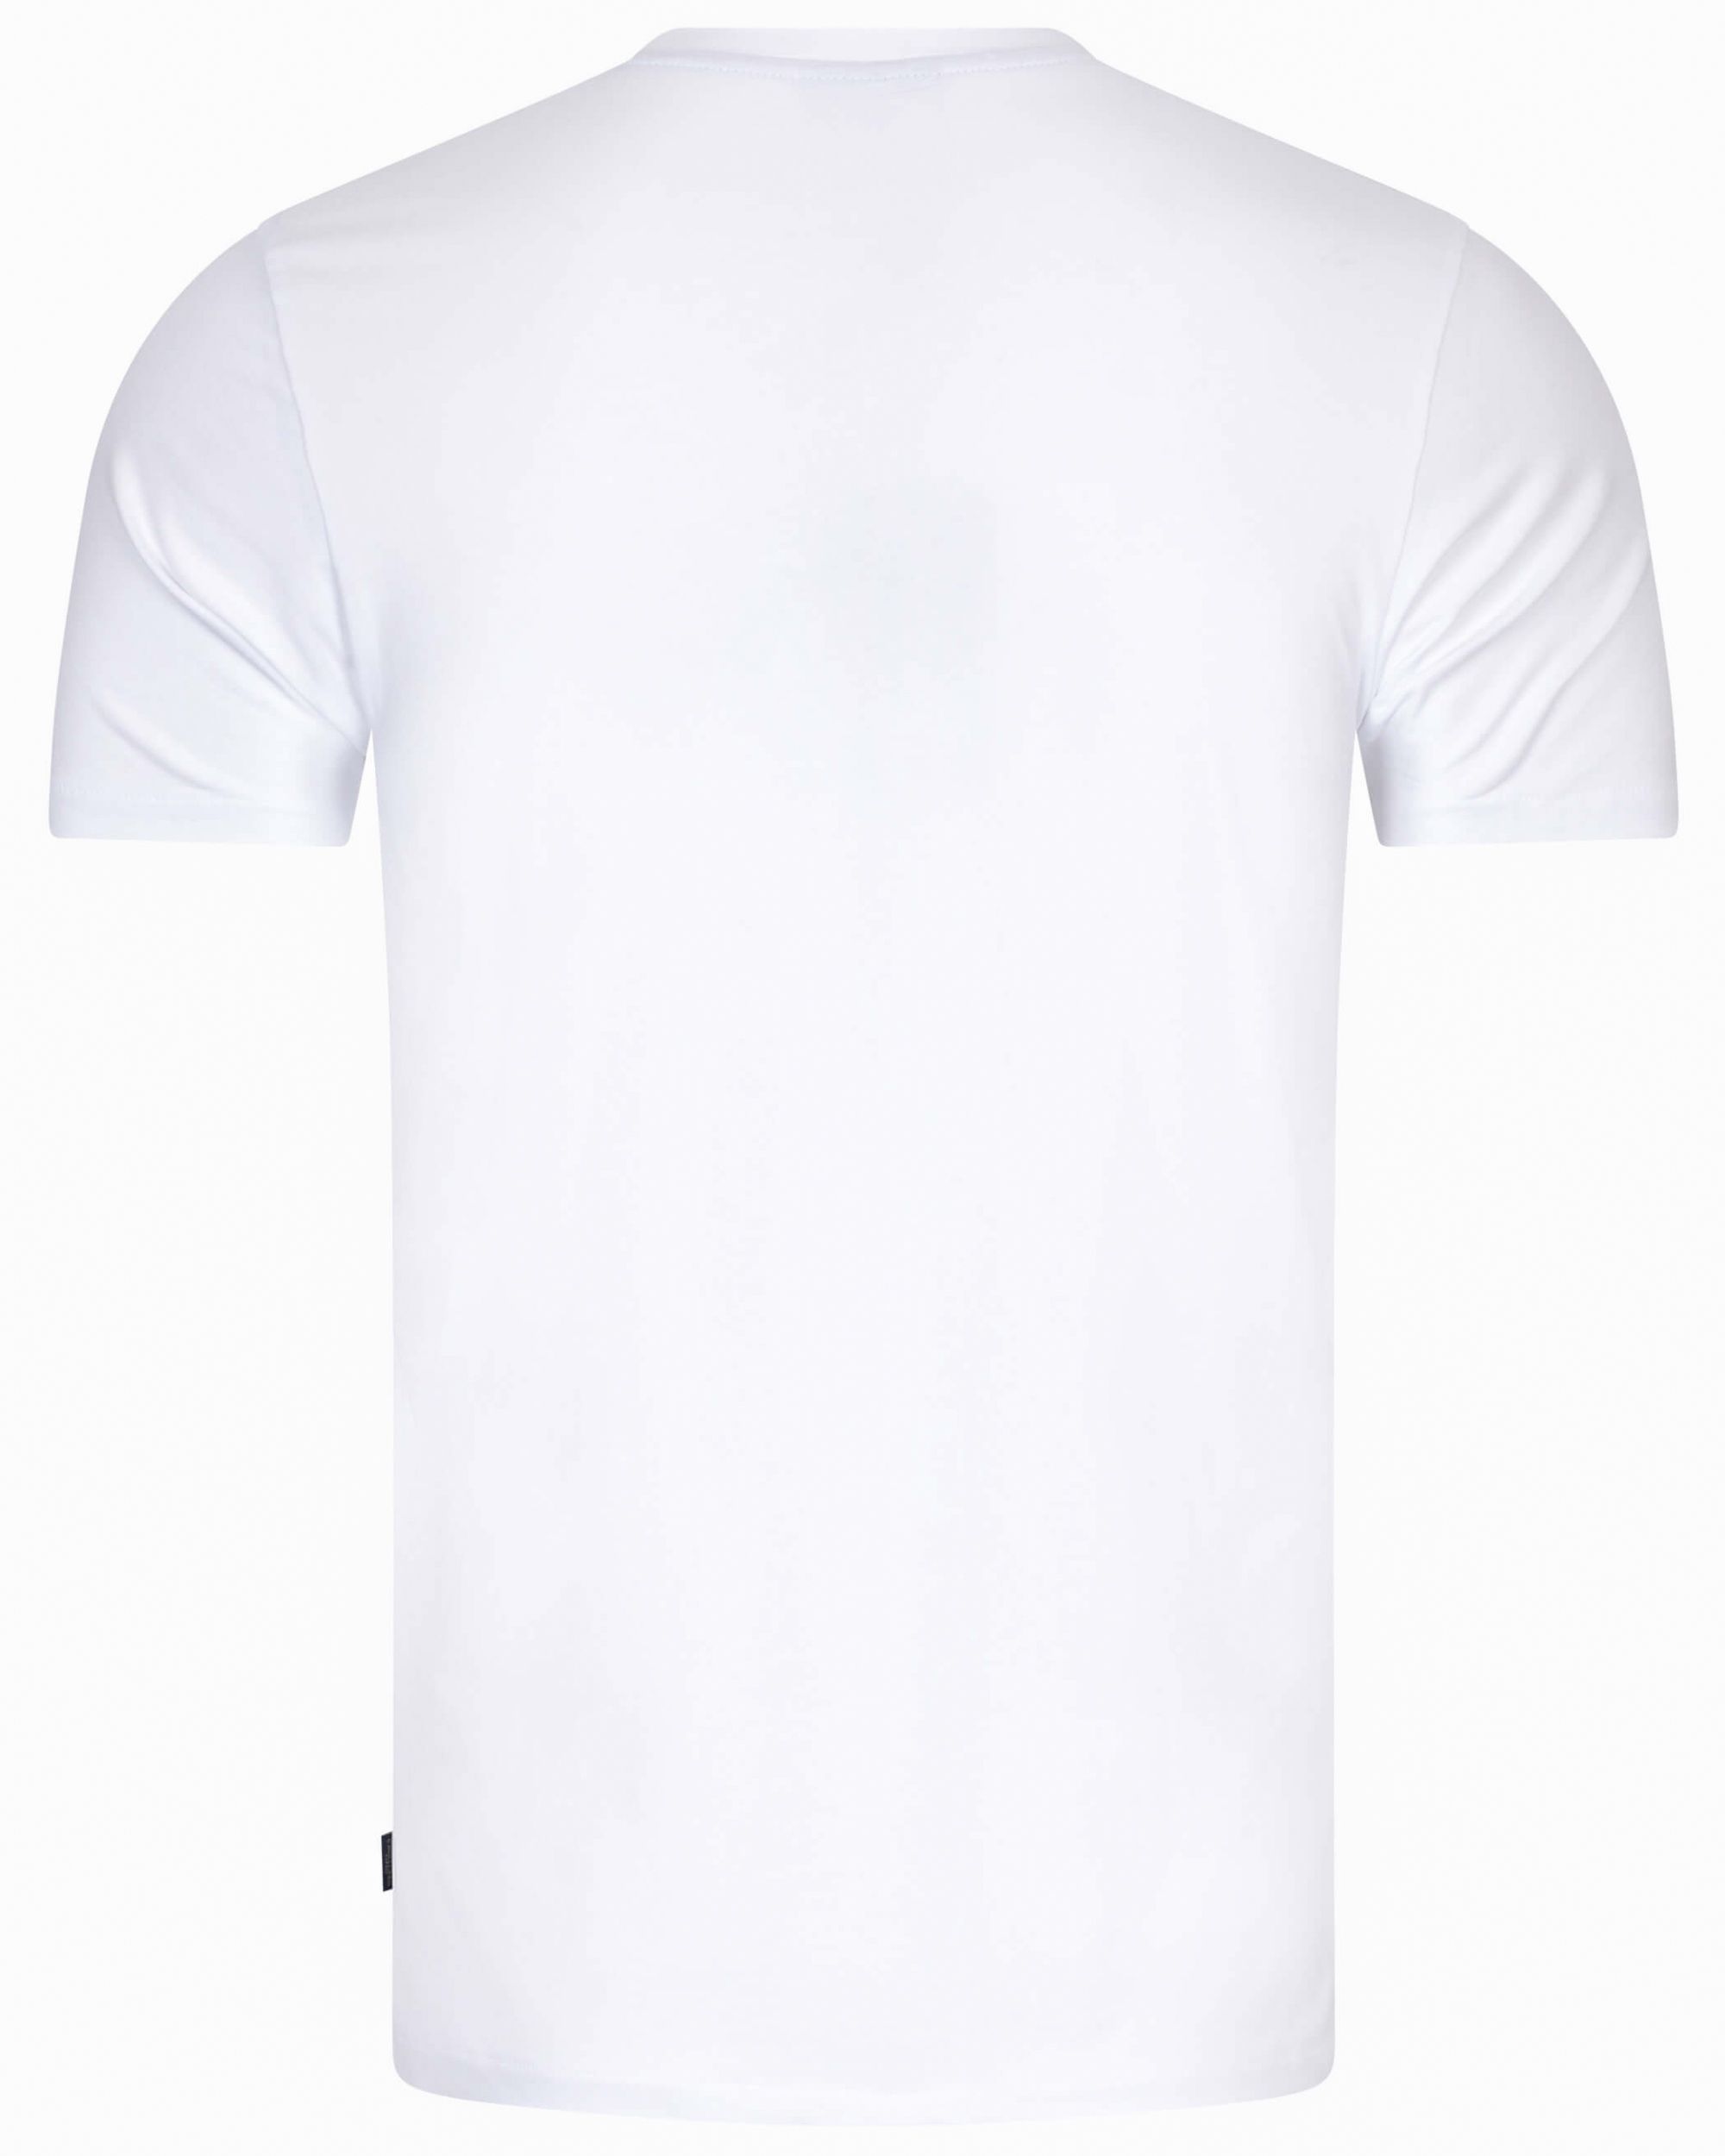 Cavallaro Bari T-shirt KM Wit 094410-001-L